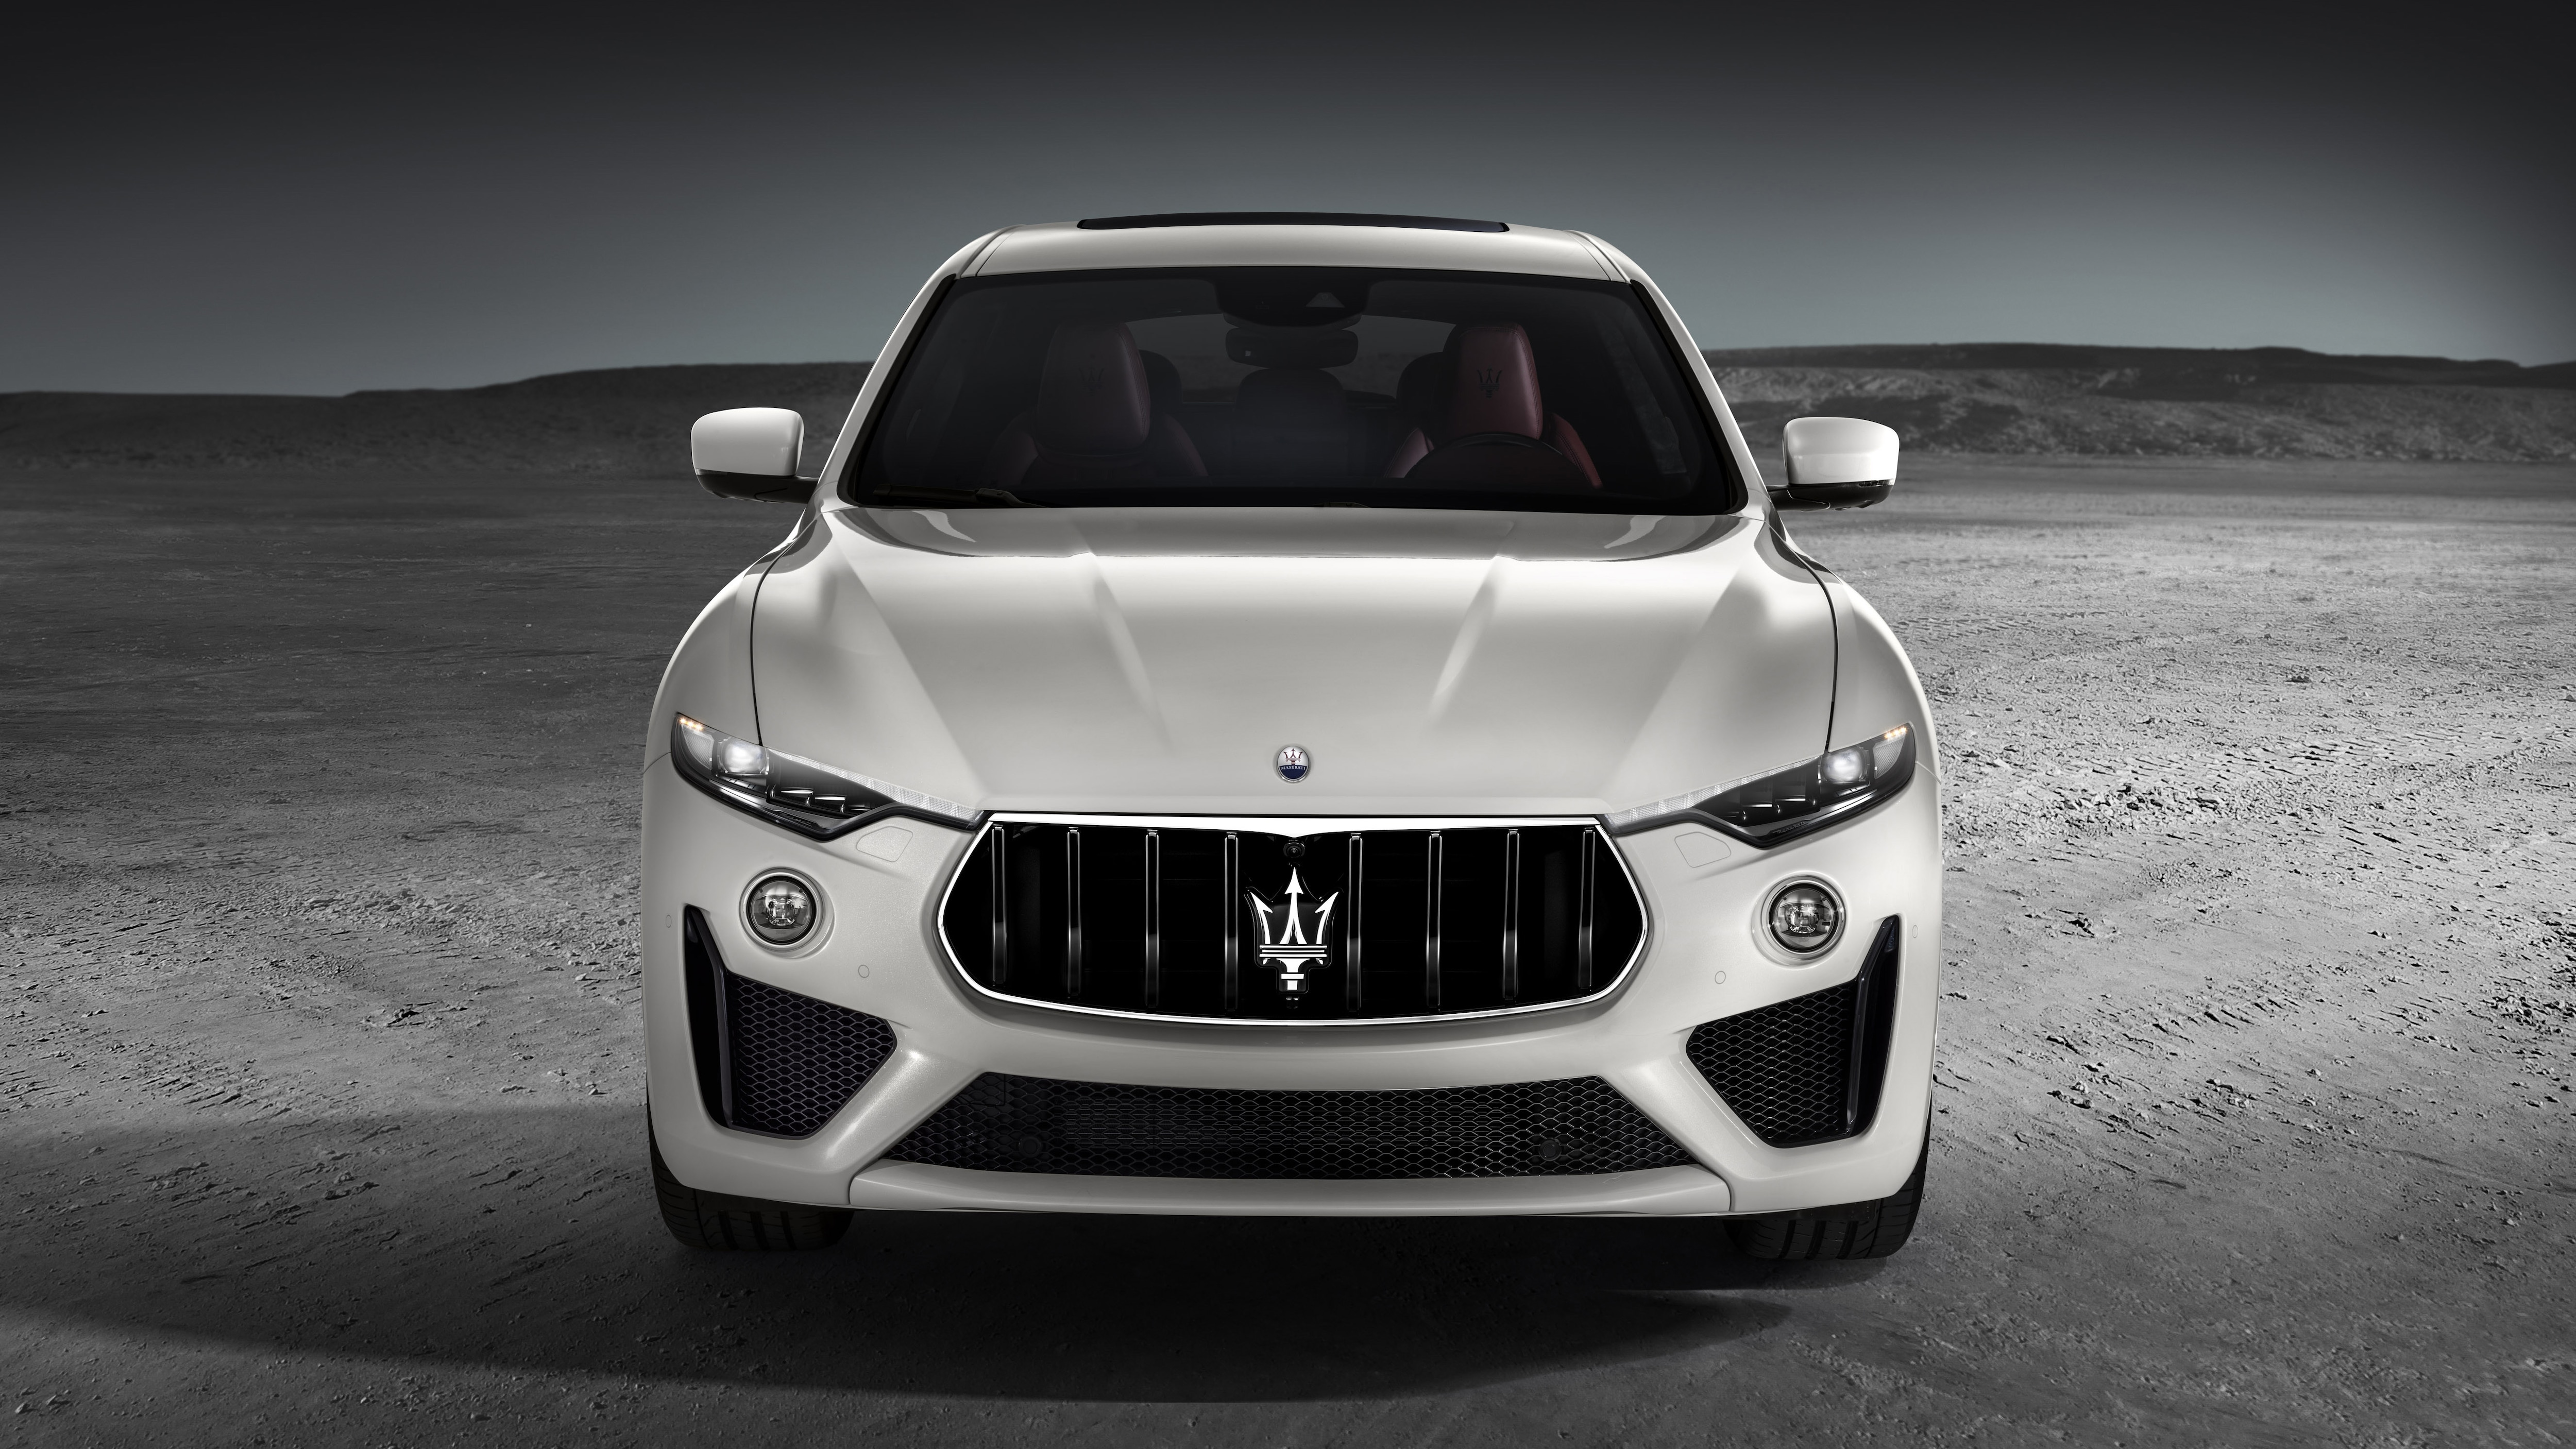 Télécharger des fonds d'écran Maserati Levante Gts HD